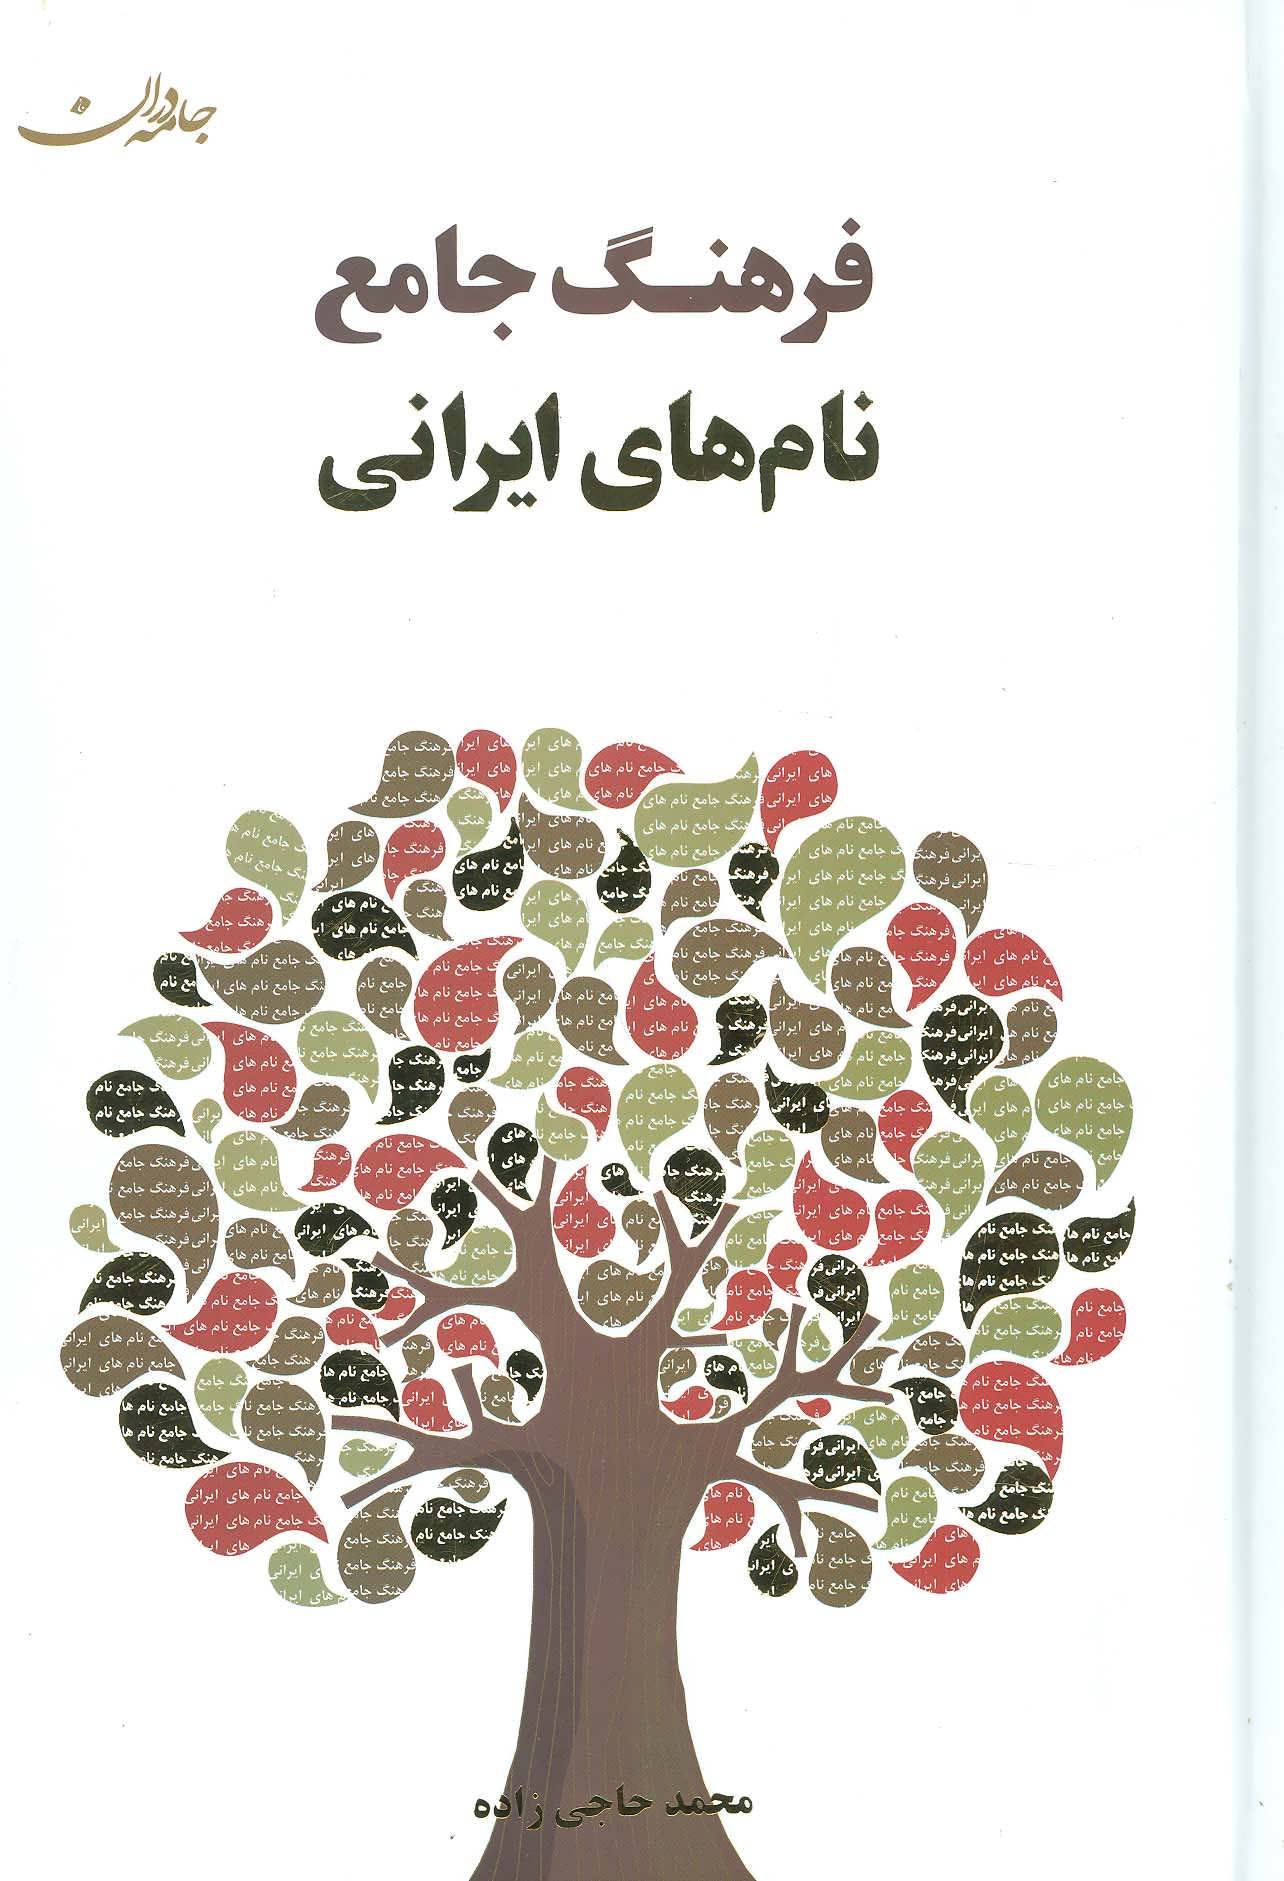 فرهنگ جامع نام های ایرانی